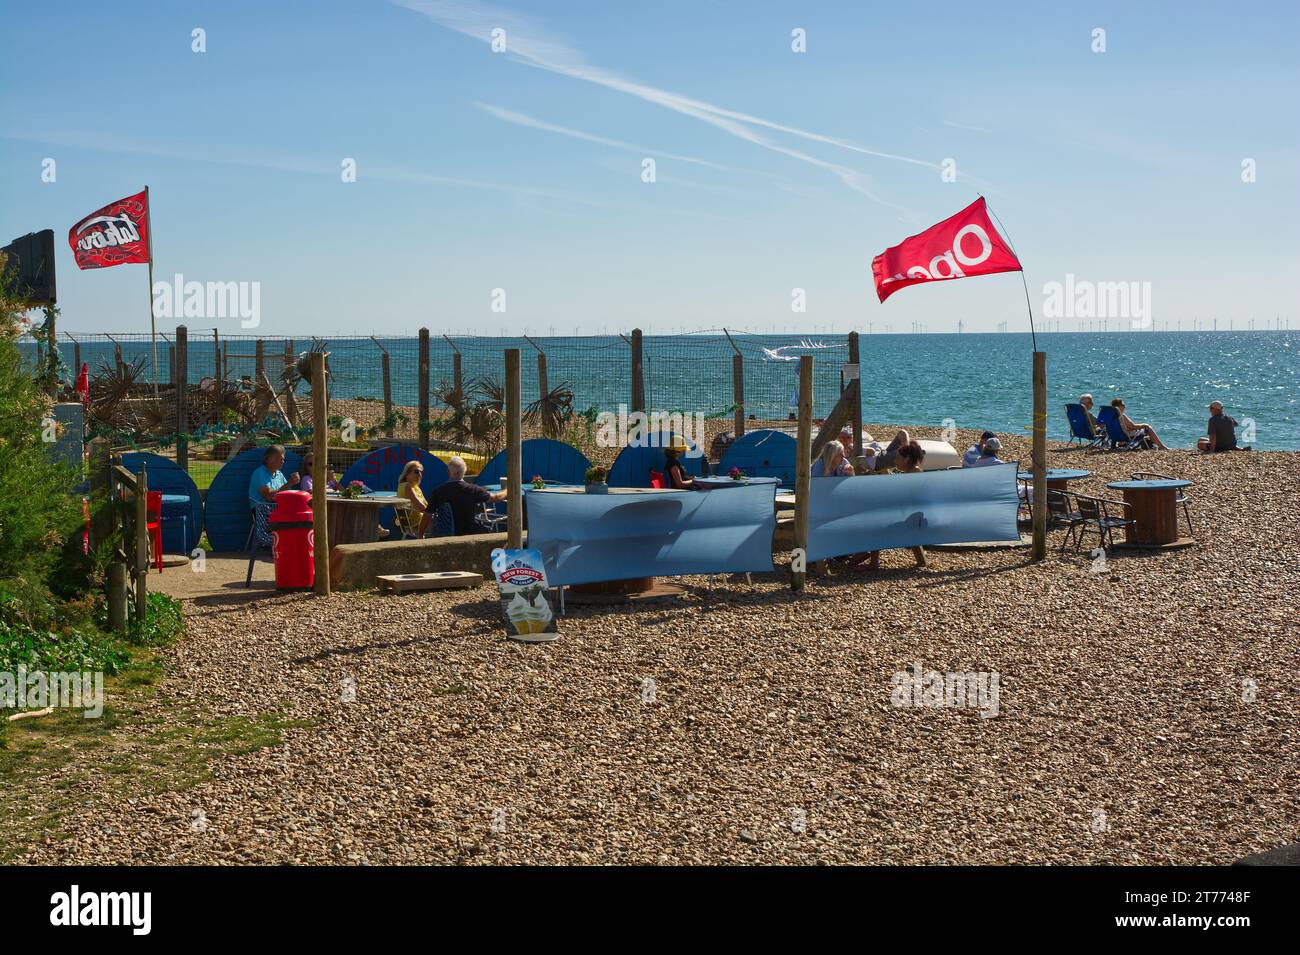 Petit café de plage à East Preston près de Littlehampton dans le West Sussex, l Angleterre. Avec des gens assis au soleil. Banque D'Images